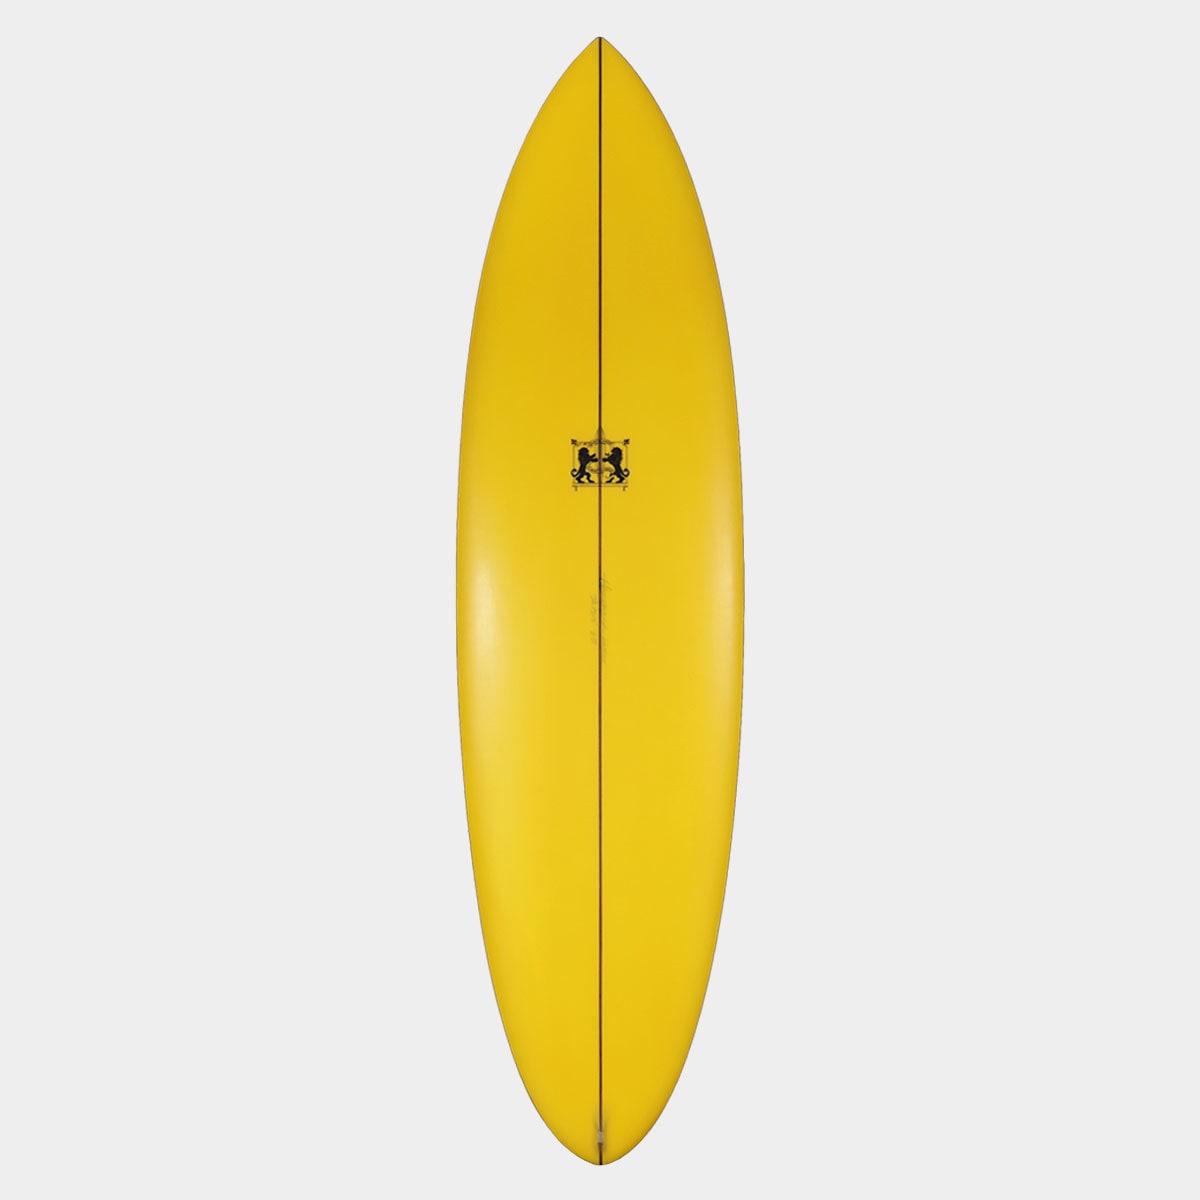 ラリーメイビル サーフボード ツインザー 6'10 サーフィン オンフィン クワッド surfboards LARRY MABILE TWINZER 6.10 QUAD【jk2305】